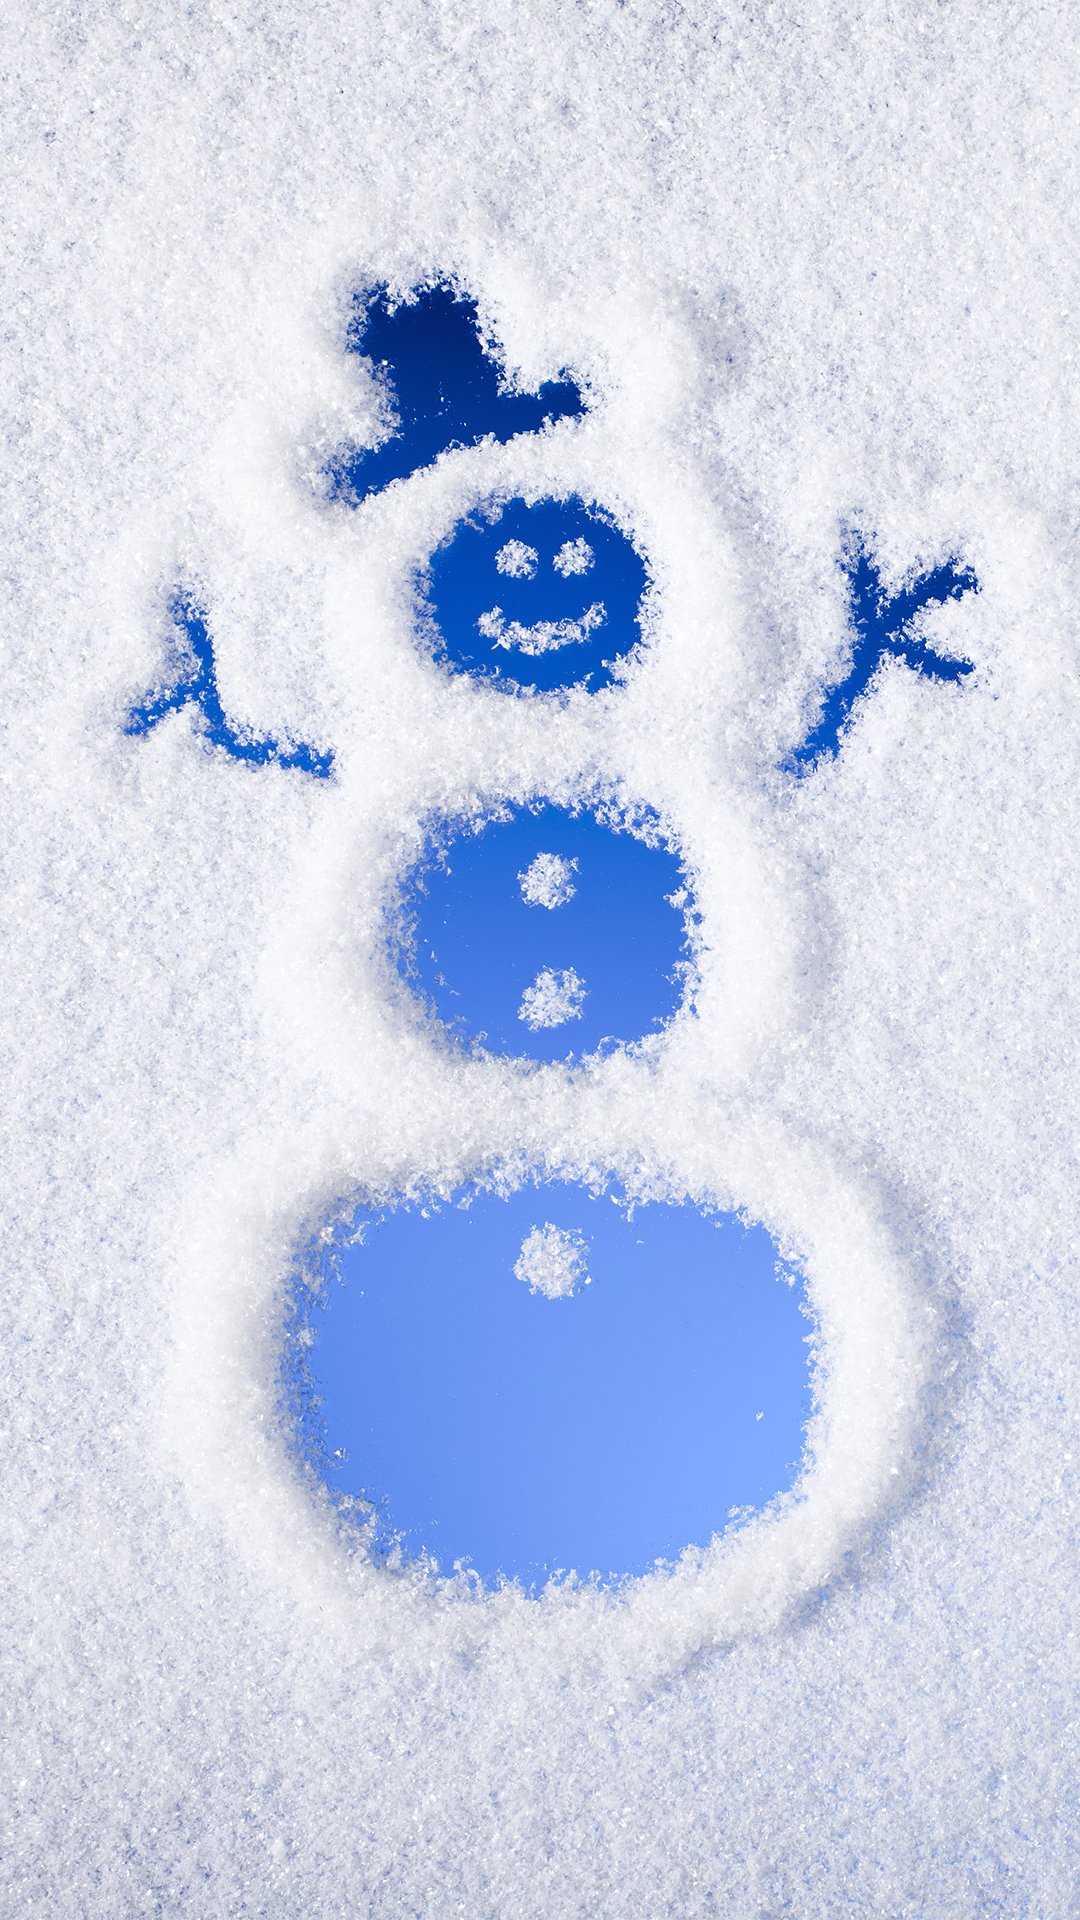 Best 10 Free winter wallpaper ideas on Pinterest Snowman wallpaper,  Christmas wallpaper free and Winter wallpapers